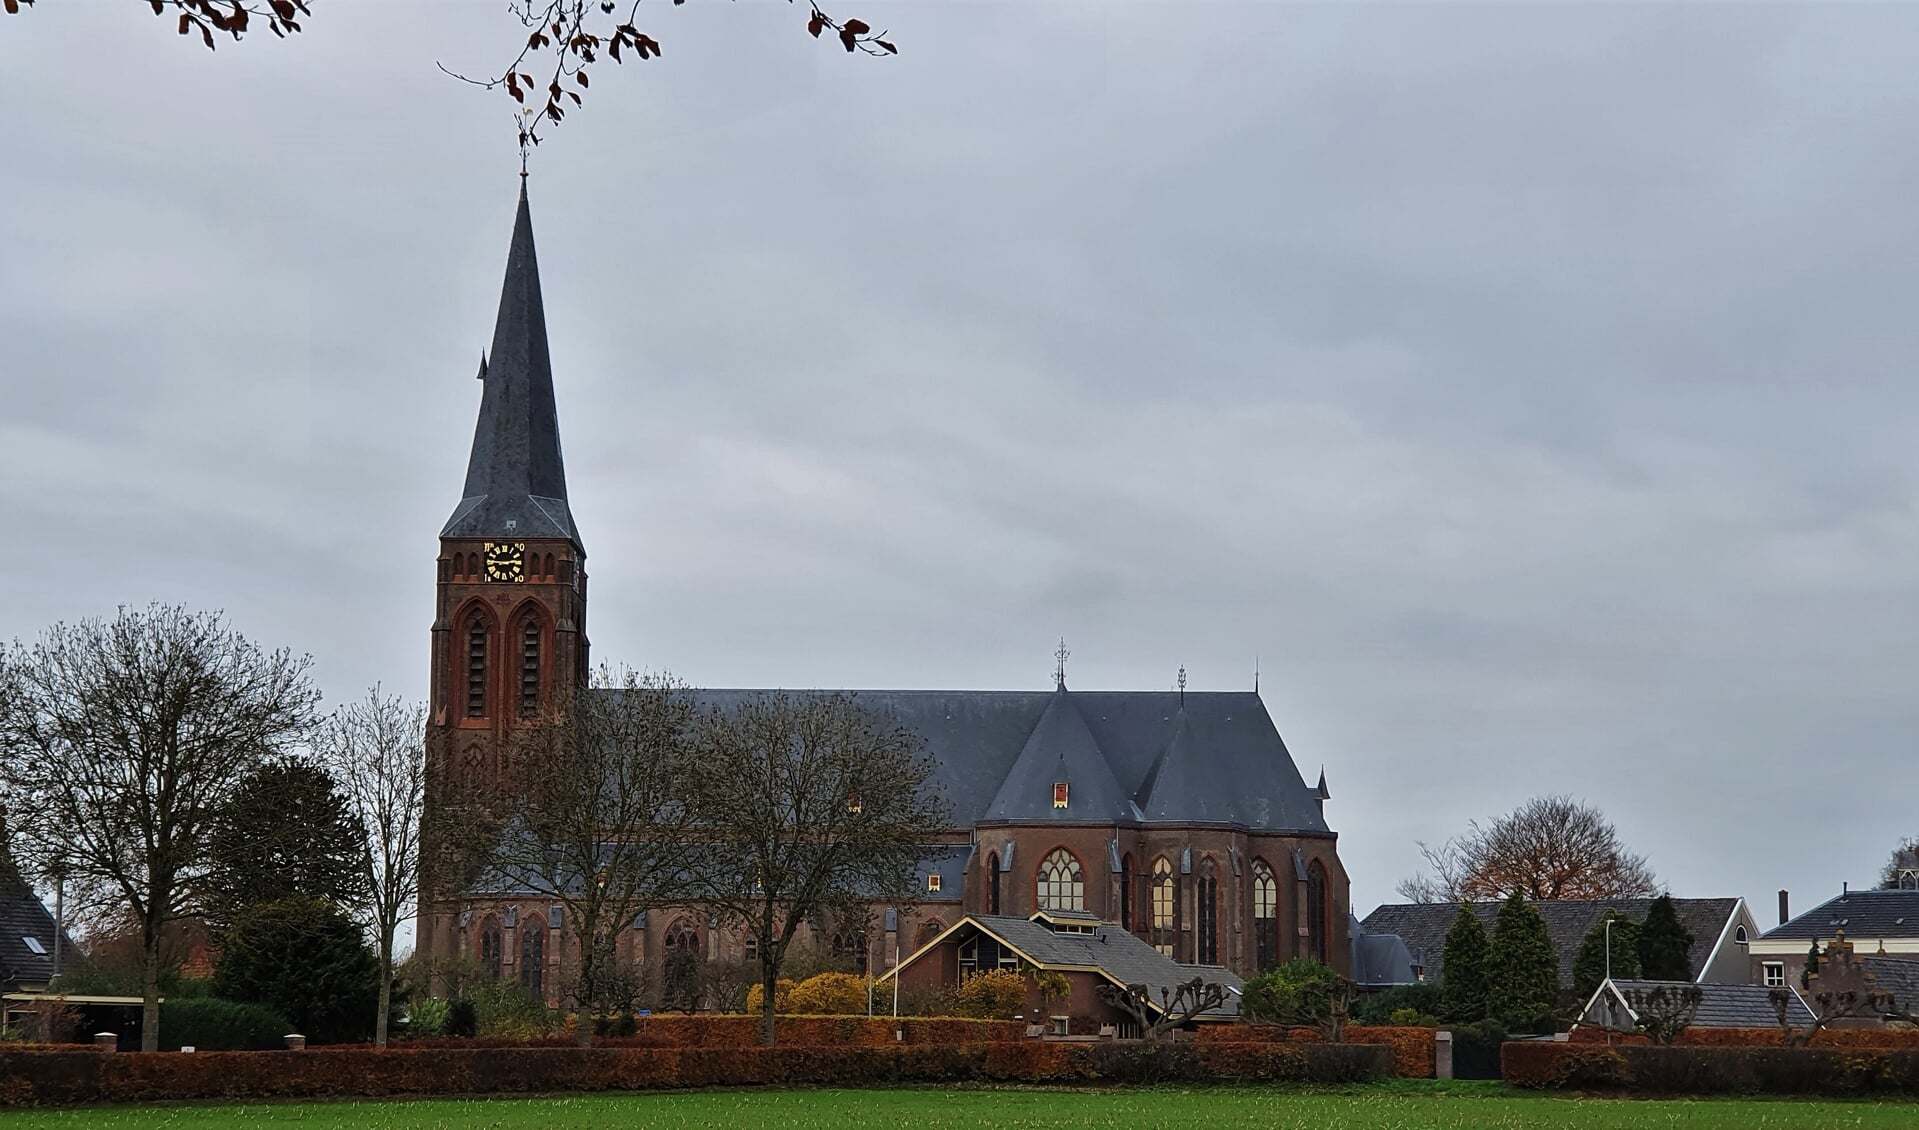 Of het Martinushuus straks onderdeel is van de toekomstige bestemming van de St. Martinuskerk is een stuk onzekerder geworden. Foto: Alice Rouwhorst